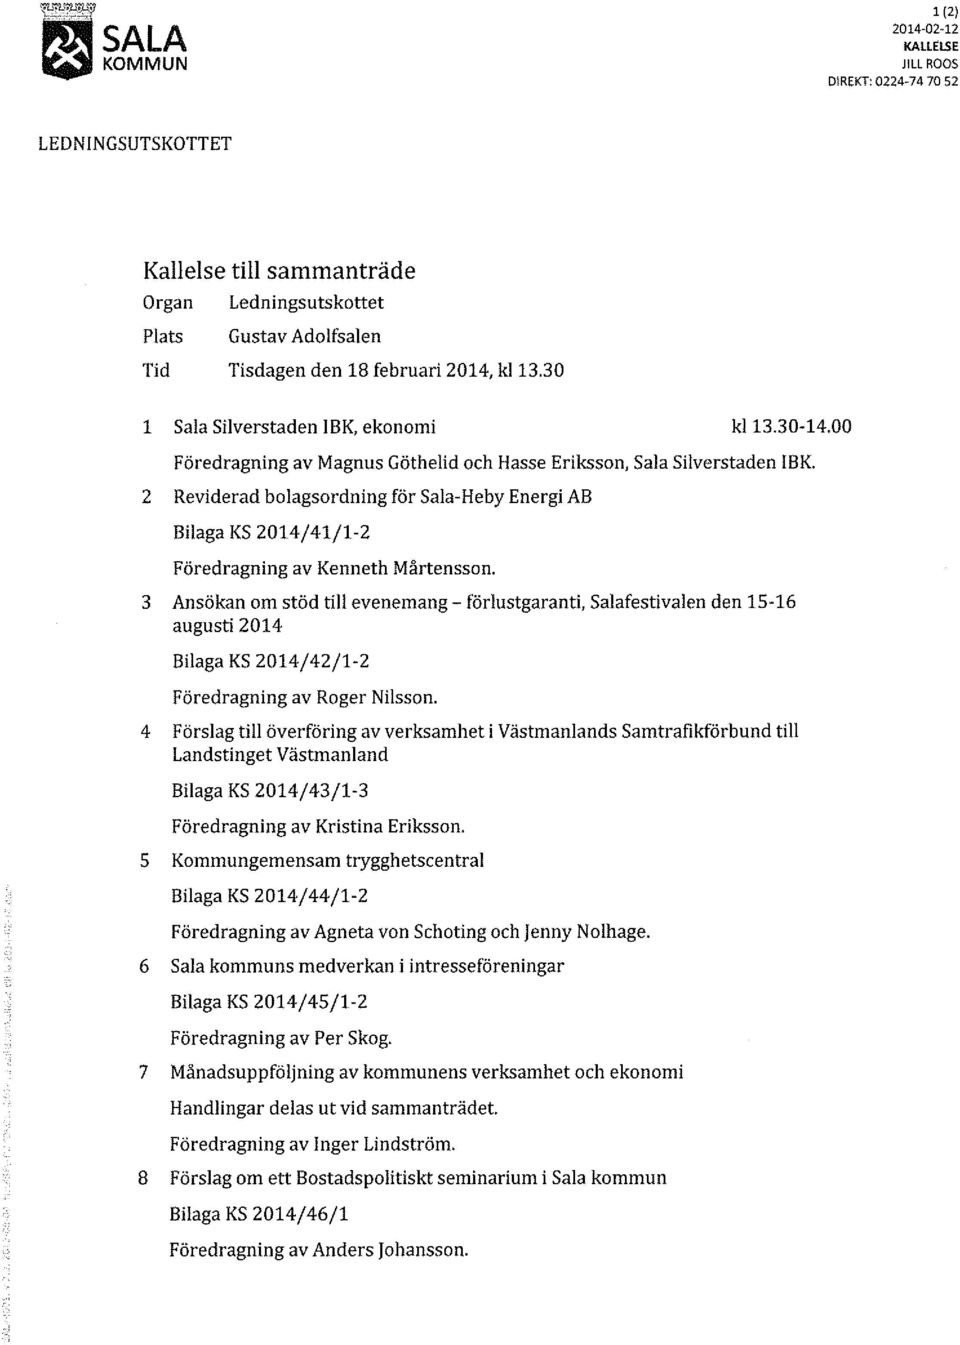 2 Reviderad bolagsordning för Sala-Heby Energi AB Bilaga KS 2014/41/1-2 Föredragning av Kenneth Mårtensson.